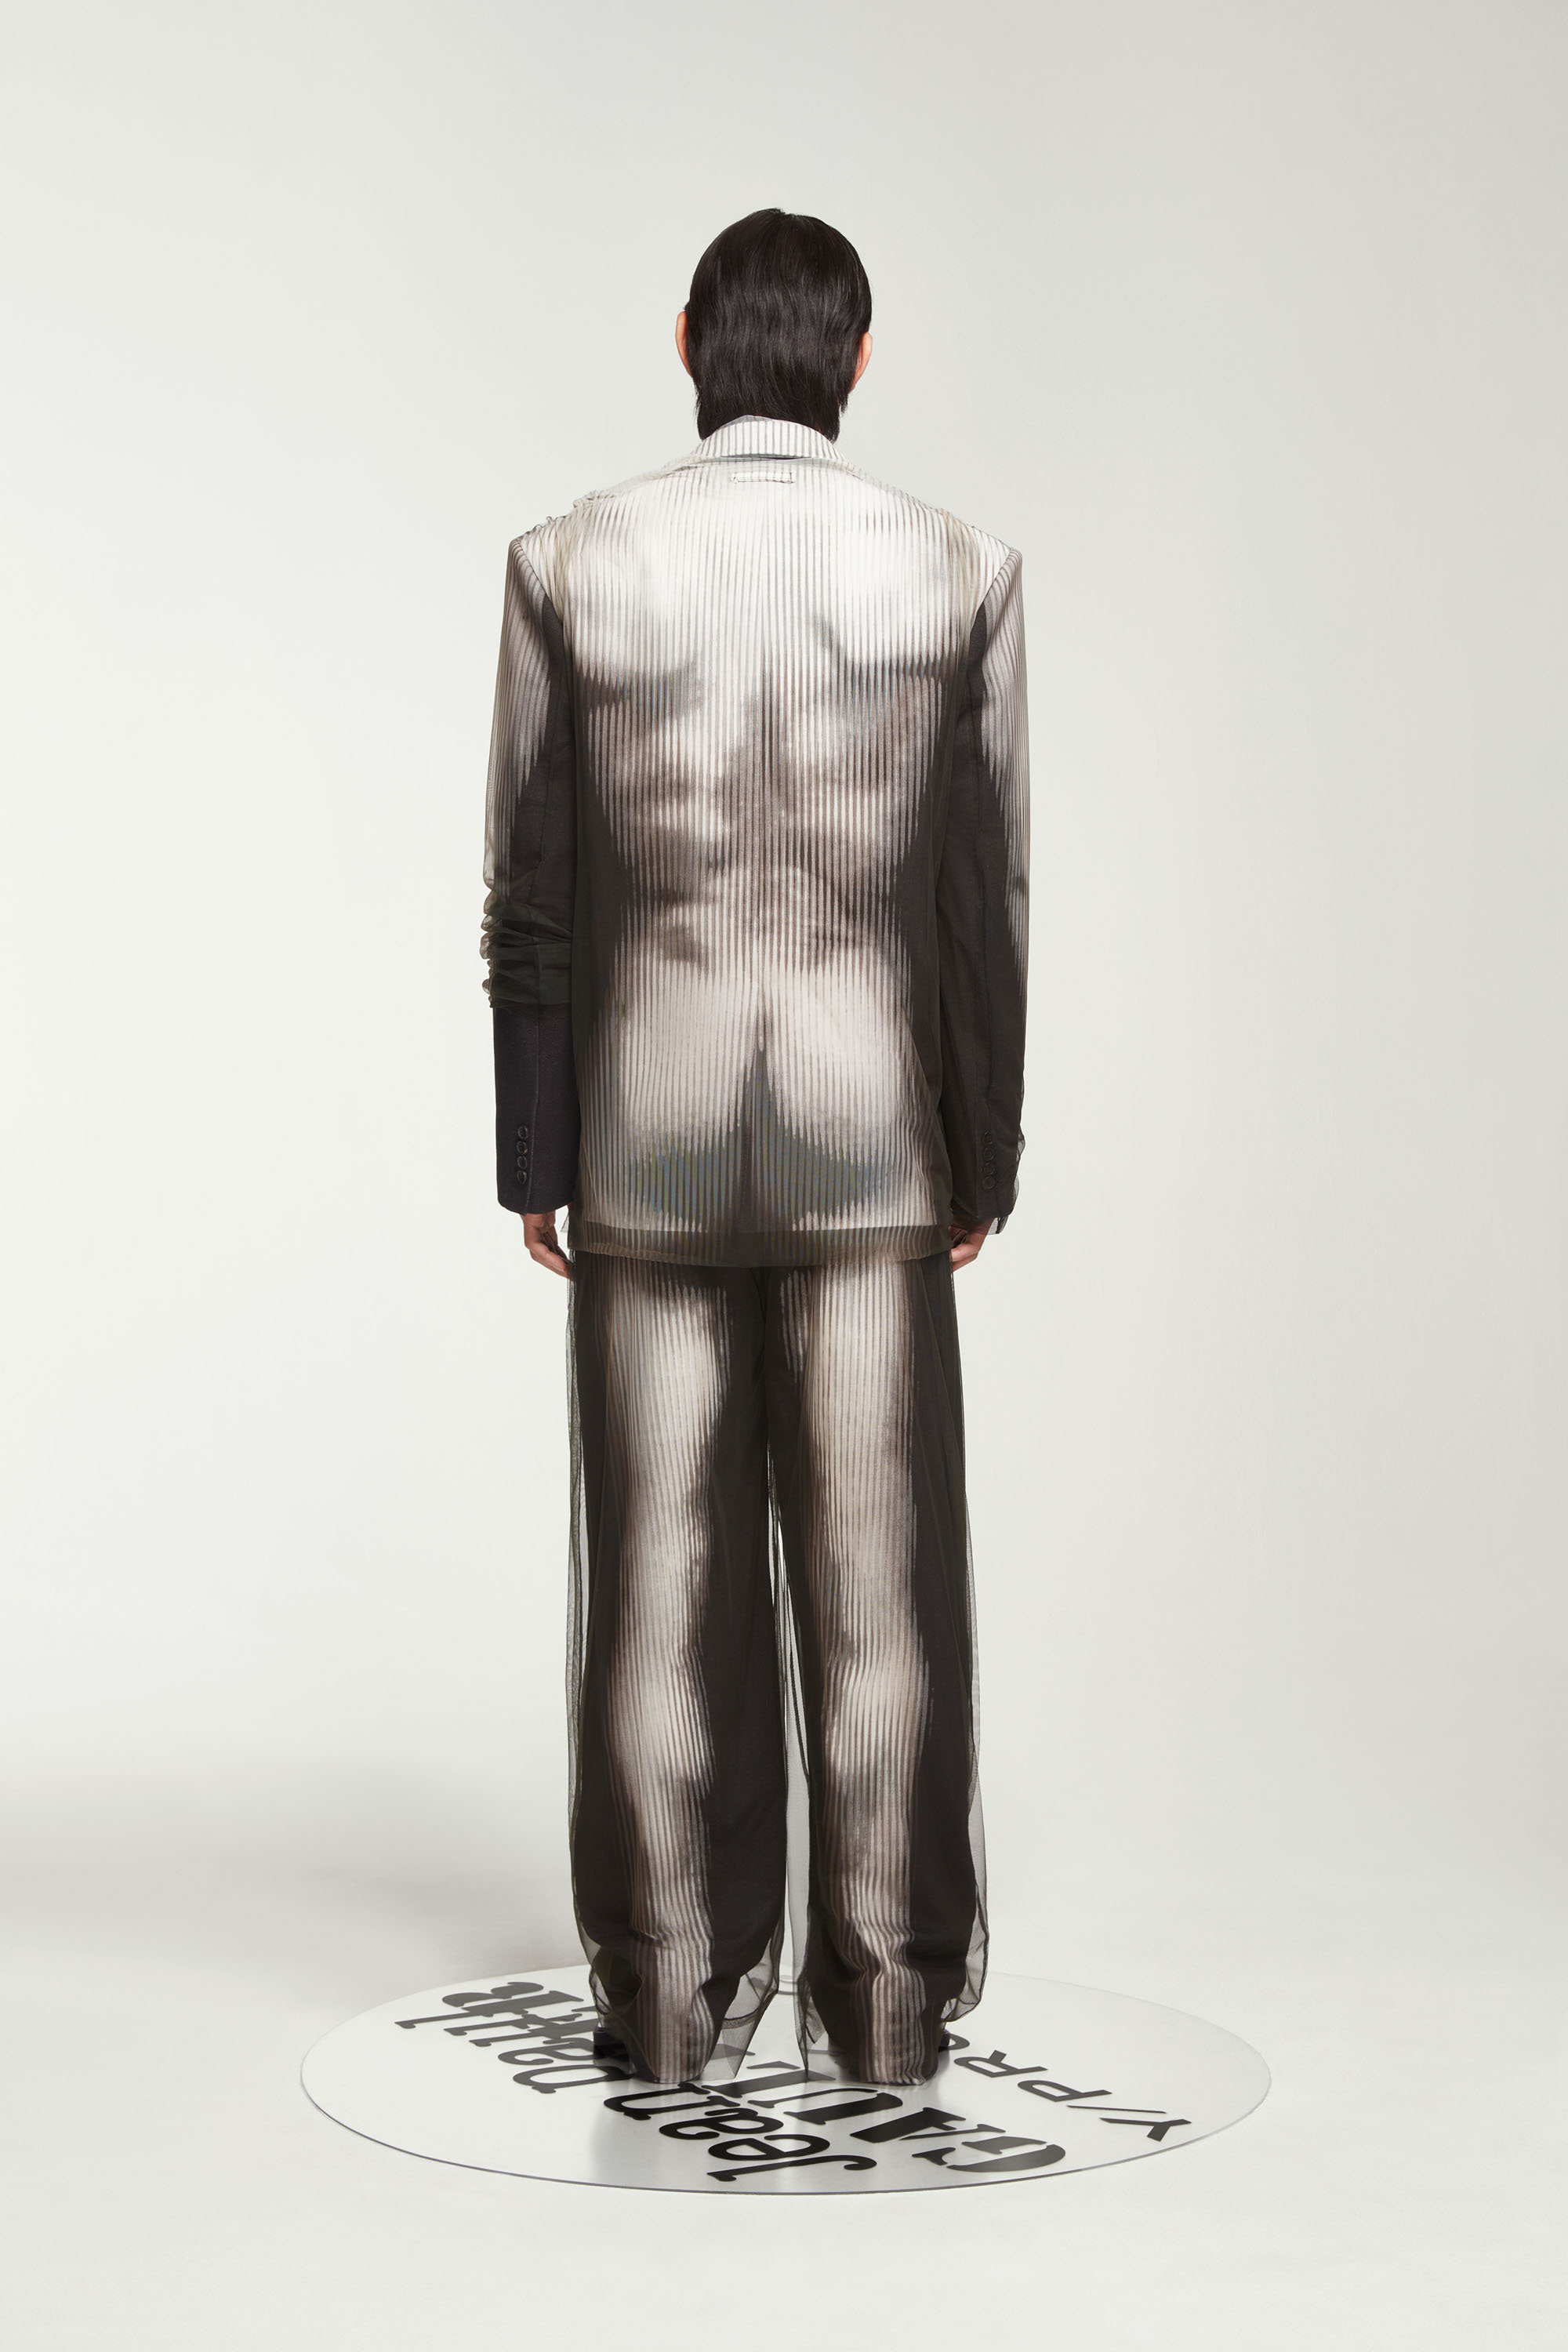 Jean Paul Gaultier - The JPG x Y/Project Black & White Body Morph 